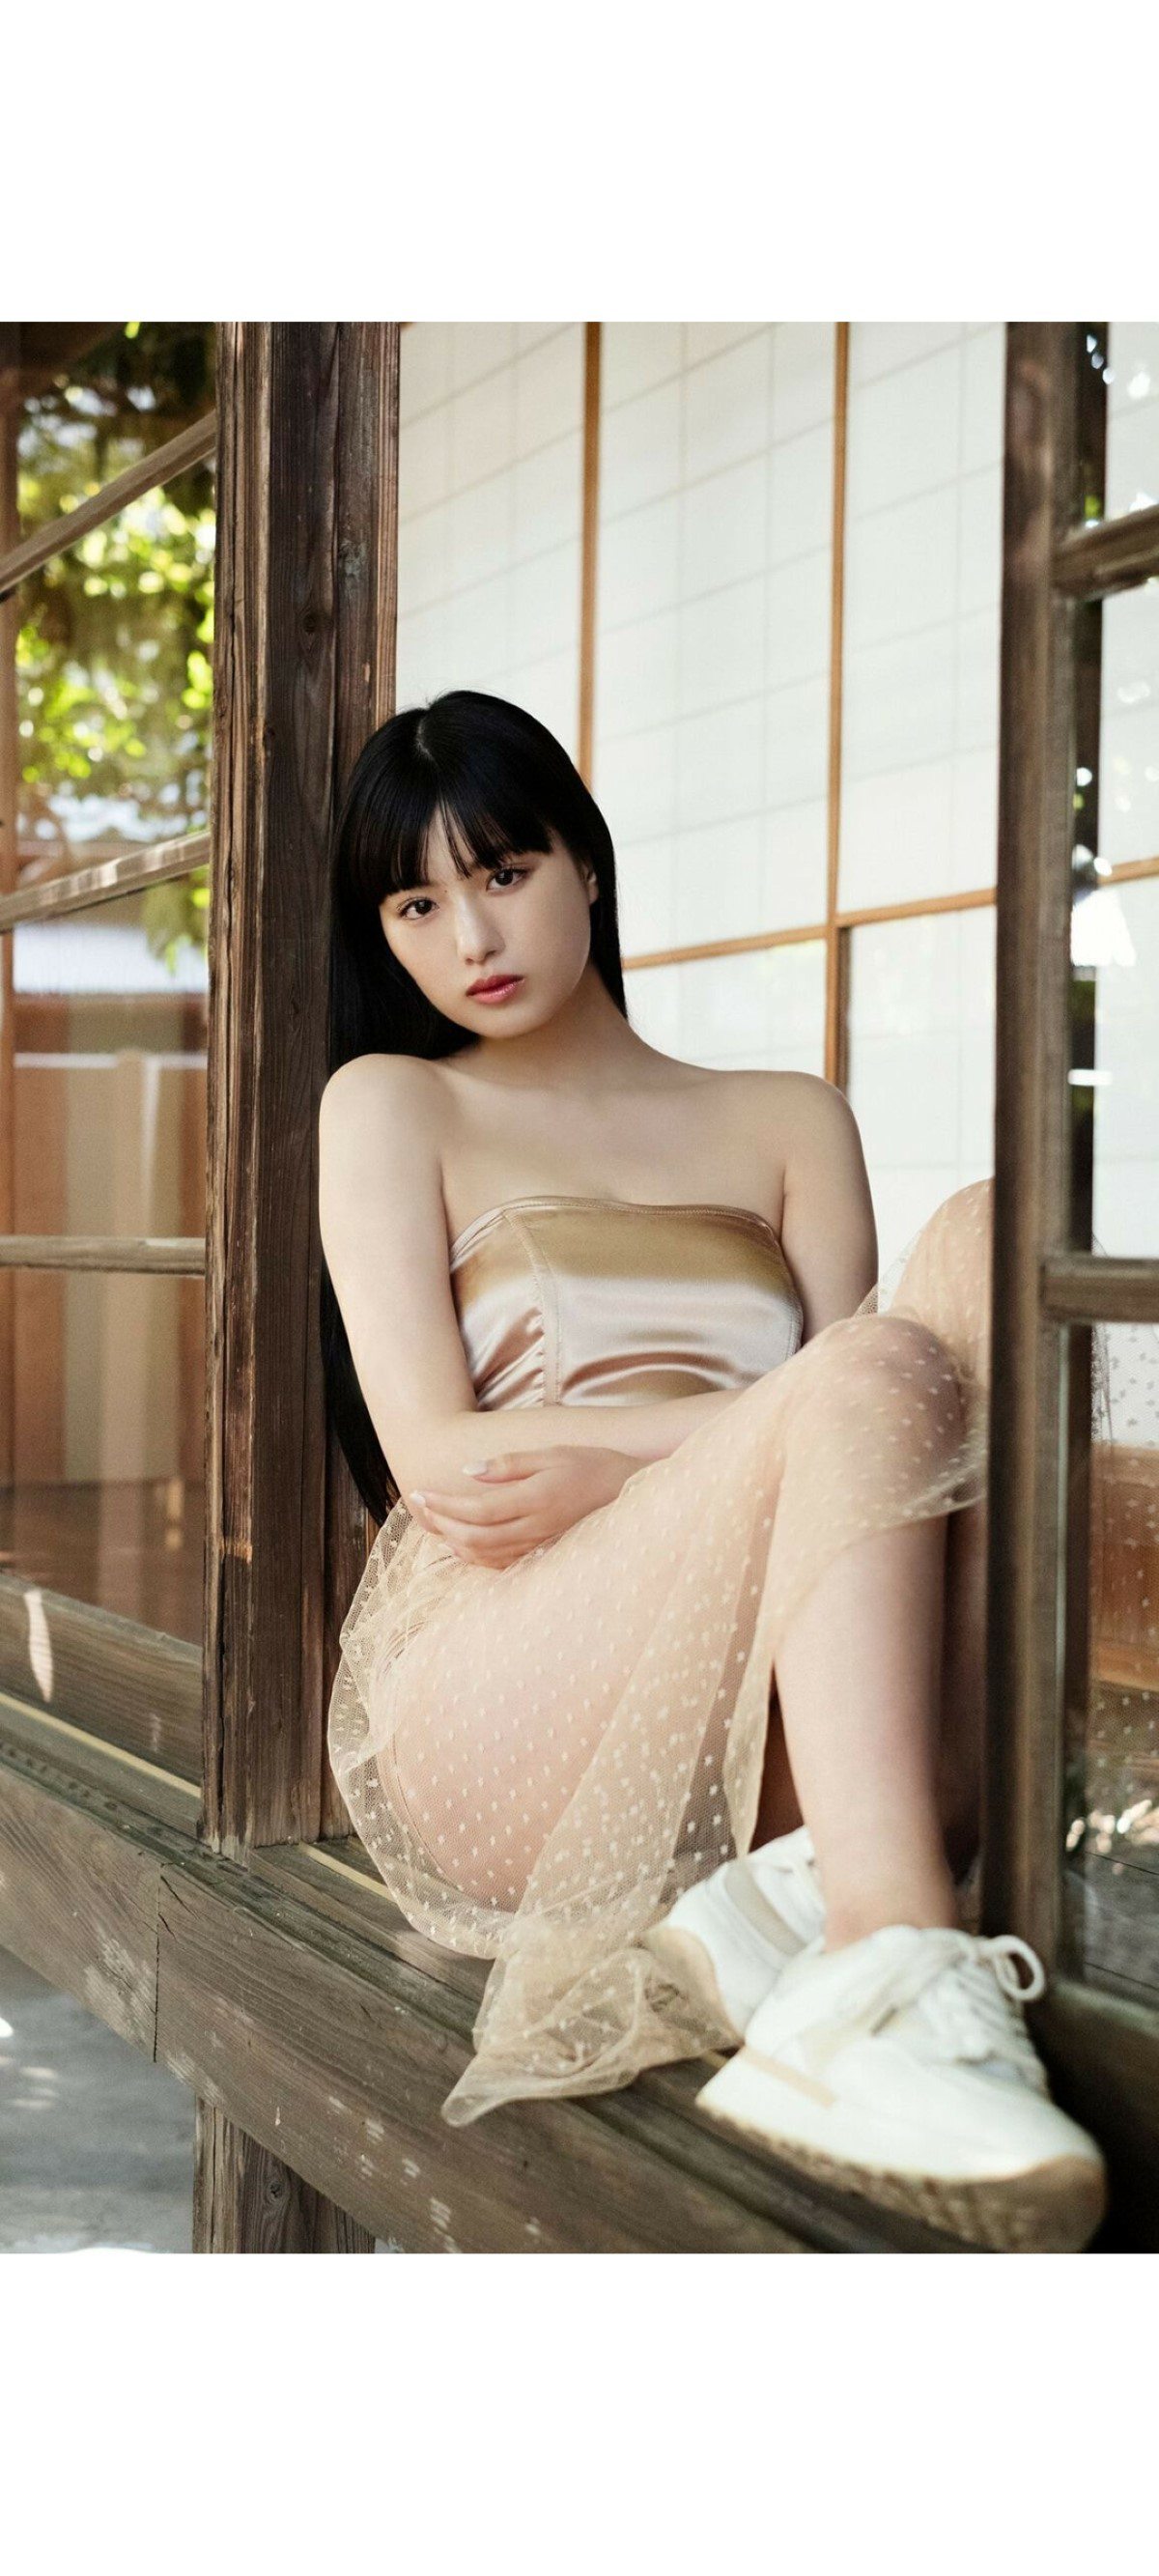 Weekly Photobook 2020 12 07 Noa Tsurushima 鶴嶋乃愛 A natural actress 生まれながらにして女優 0014 6292525164.jpg